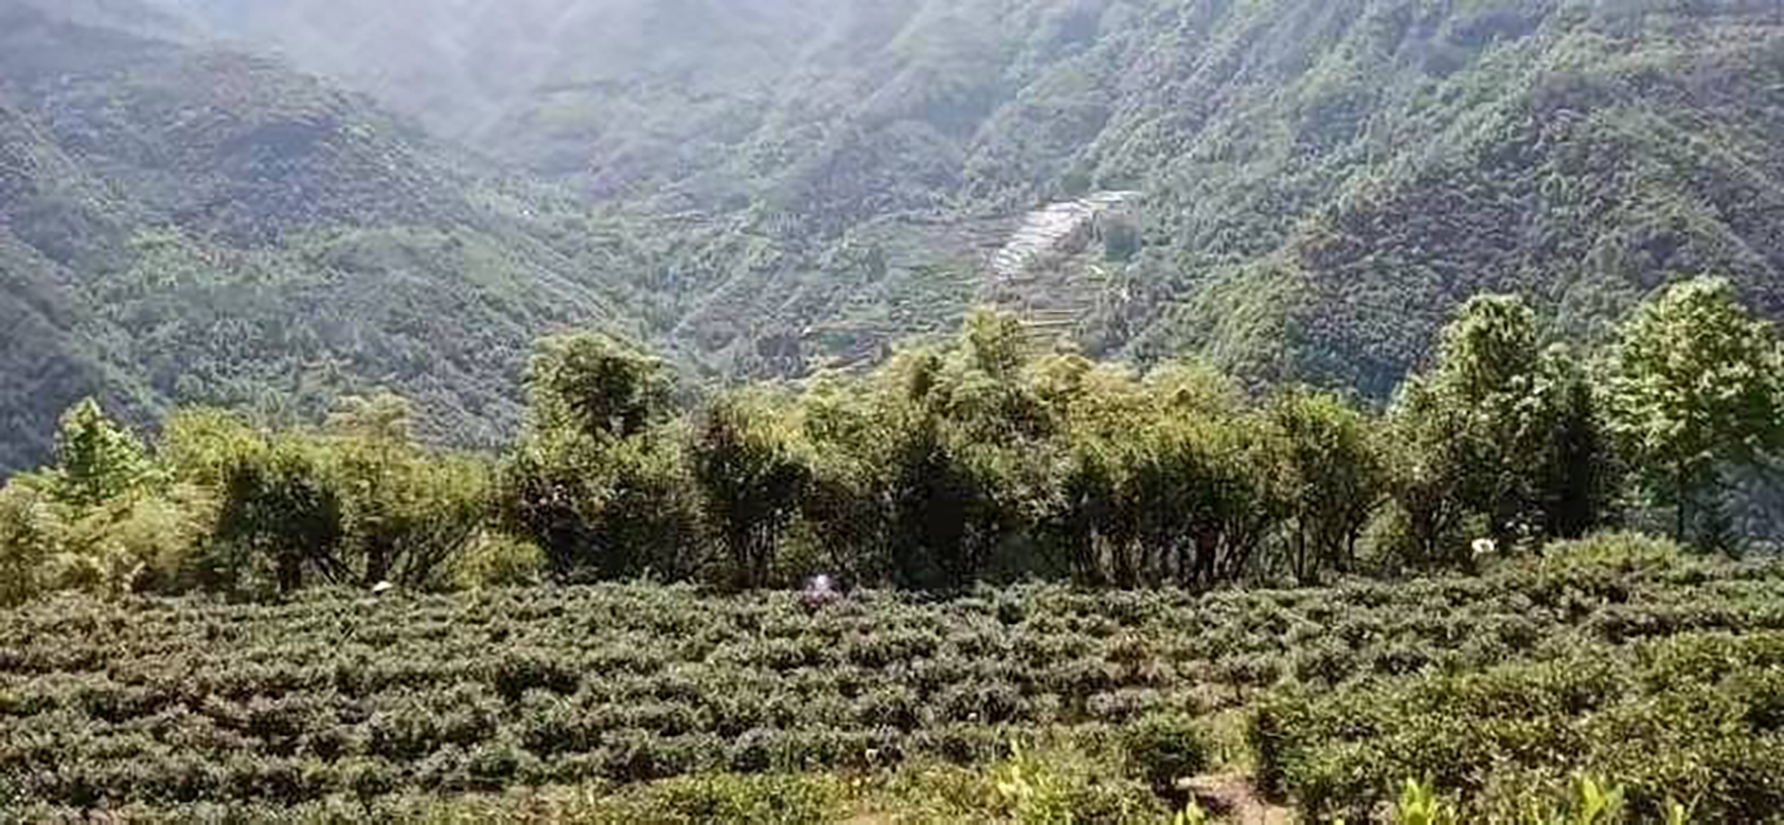 Die verwildeteten Teebäume am Rande des Teegartens